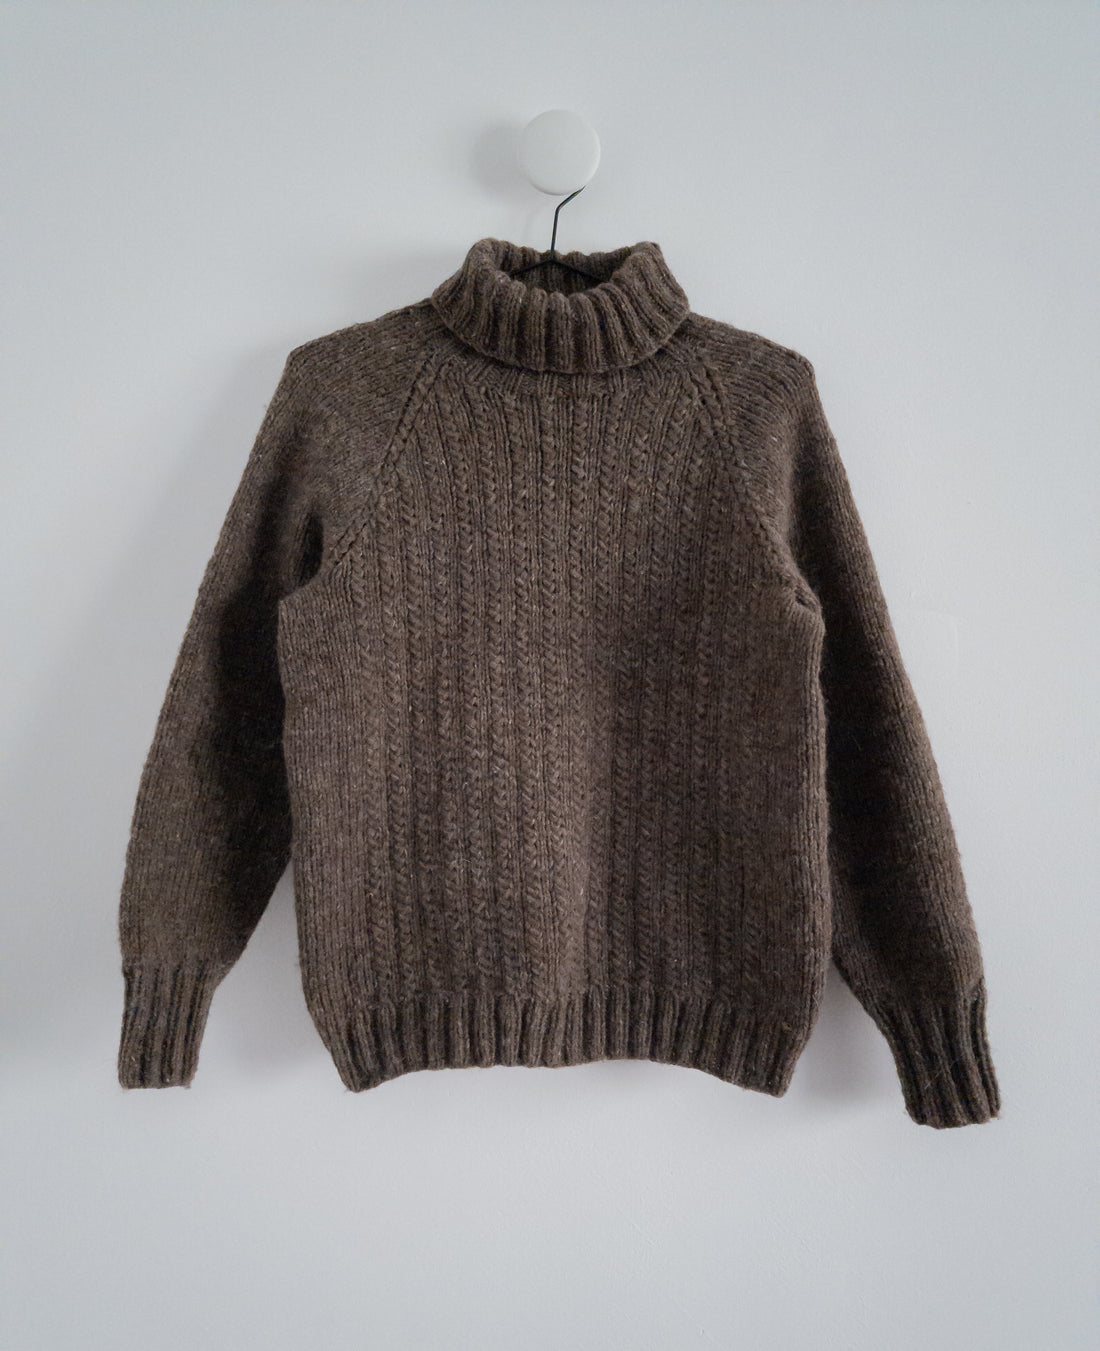 Fisherman's Raglan Sweater - Knitting Pattern – Woodlandsknits